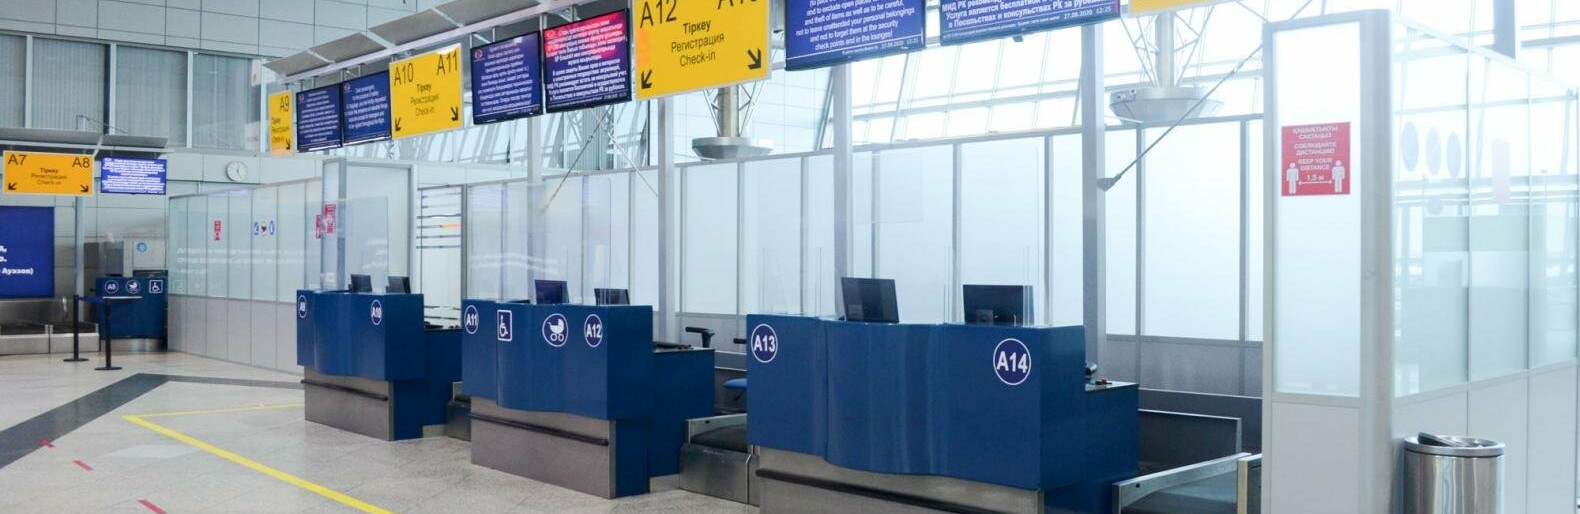 Бесплатным Wi-Fi могут воспользоваться пассажиры аэропорта Алматы